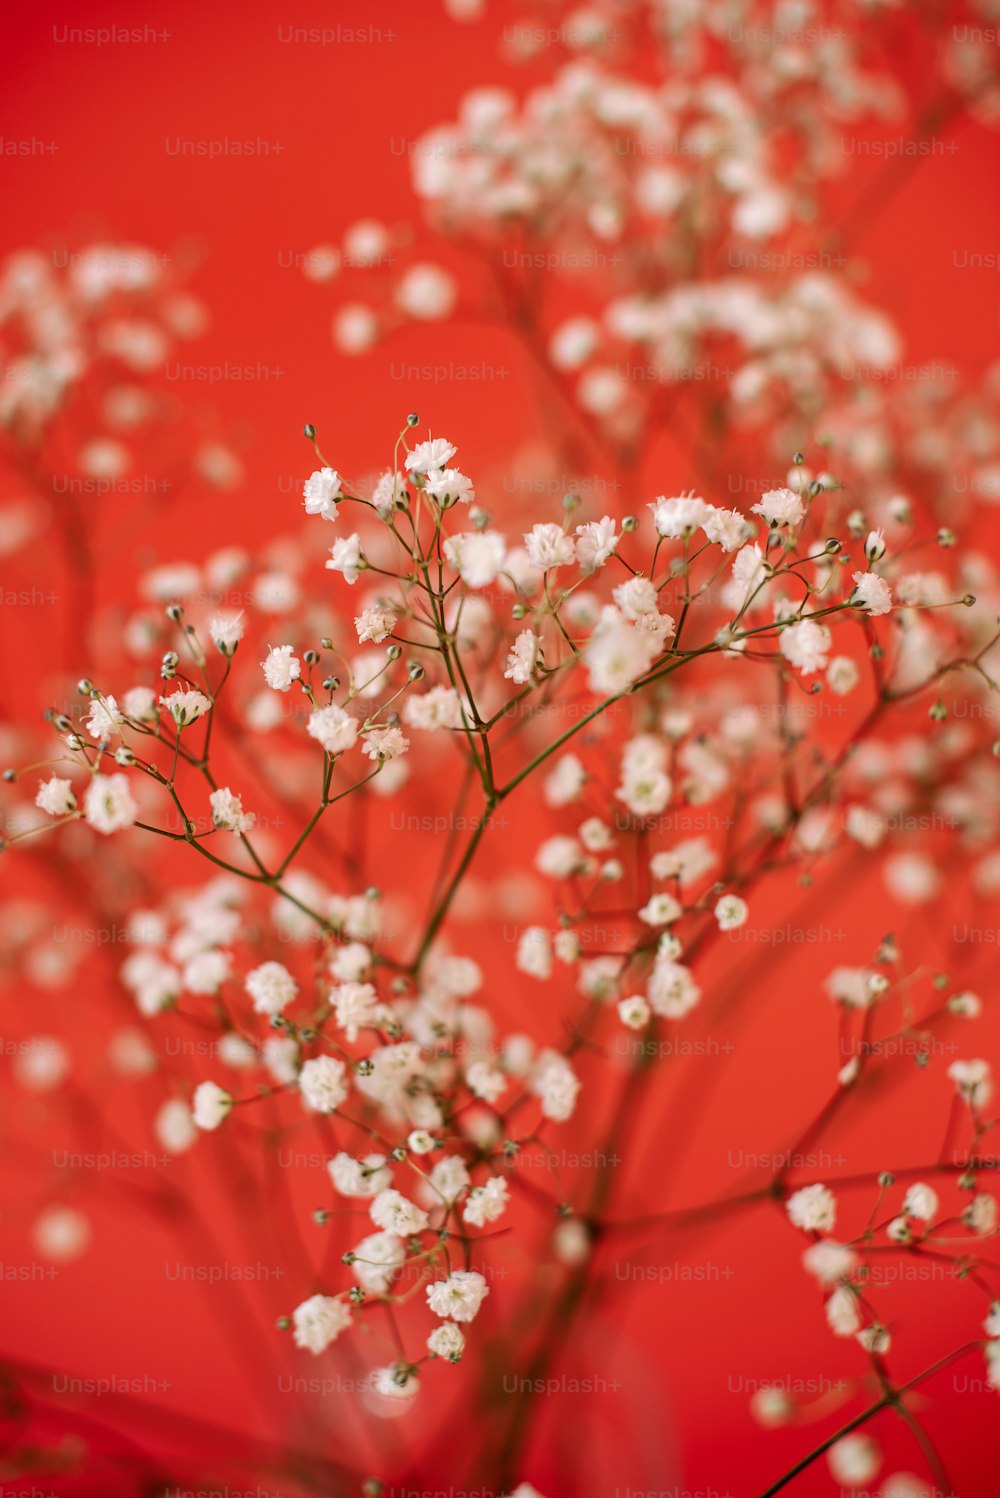 Un ramo de pequeñas flores blancas sobre un fondo rojo